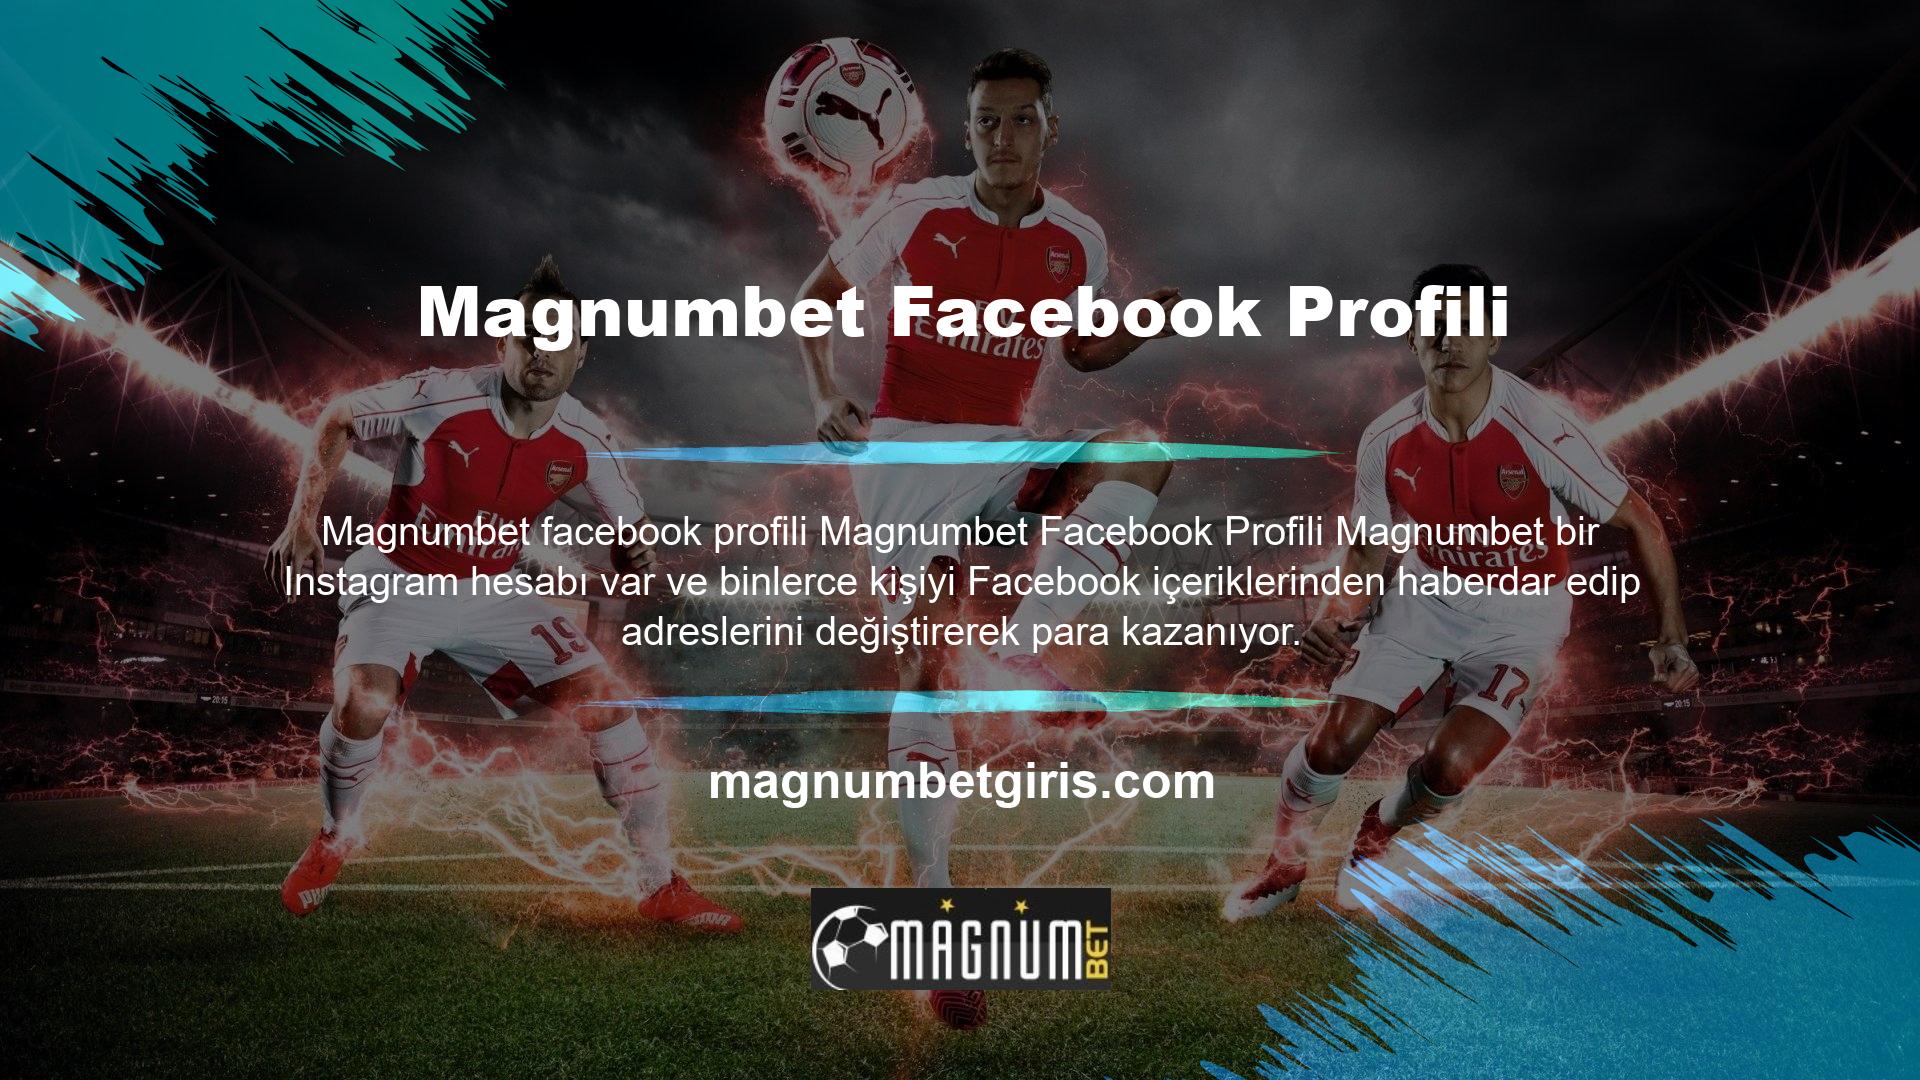 Şimdilik şirketin resmi Magnumbet hesabına Telegram ve Instagram içerikleri üzerinden erişilebiliyor